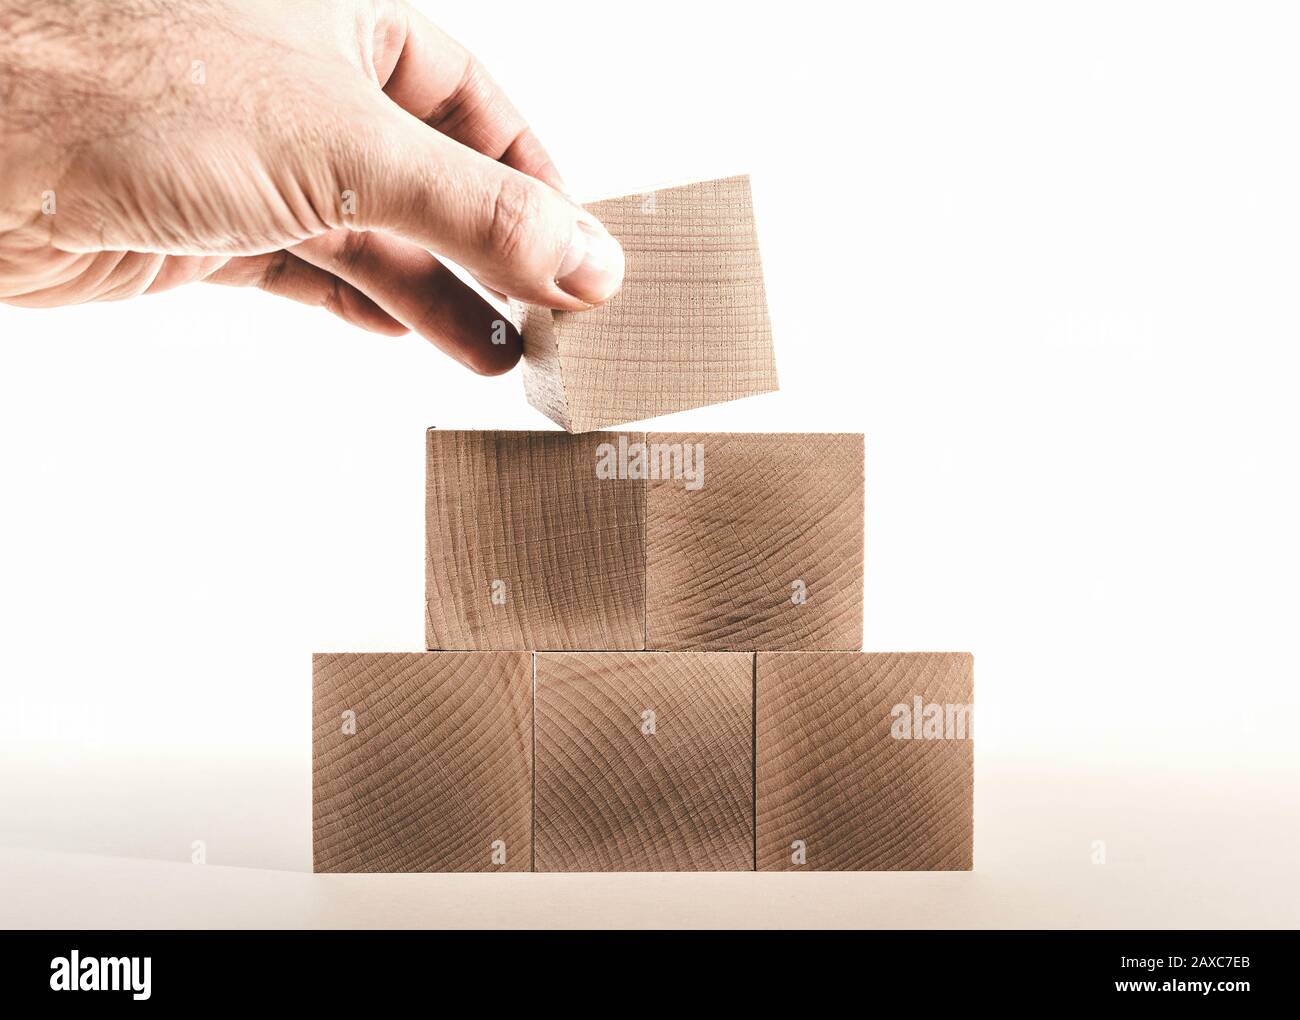 placer le dernier bloc de bois sur la pyramide, concept de croissance des affaires Banque D'Images